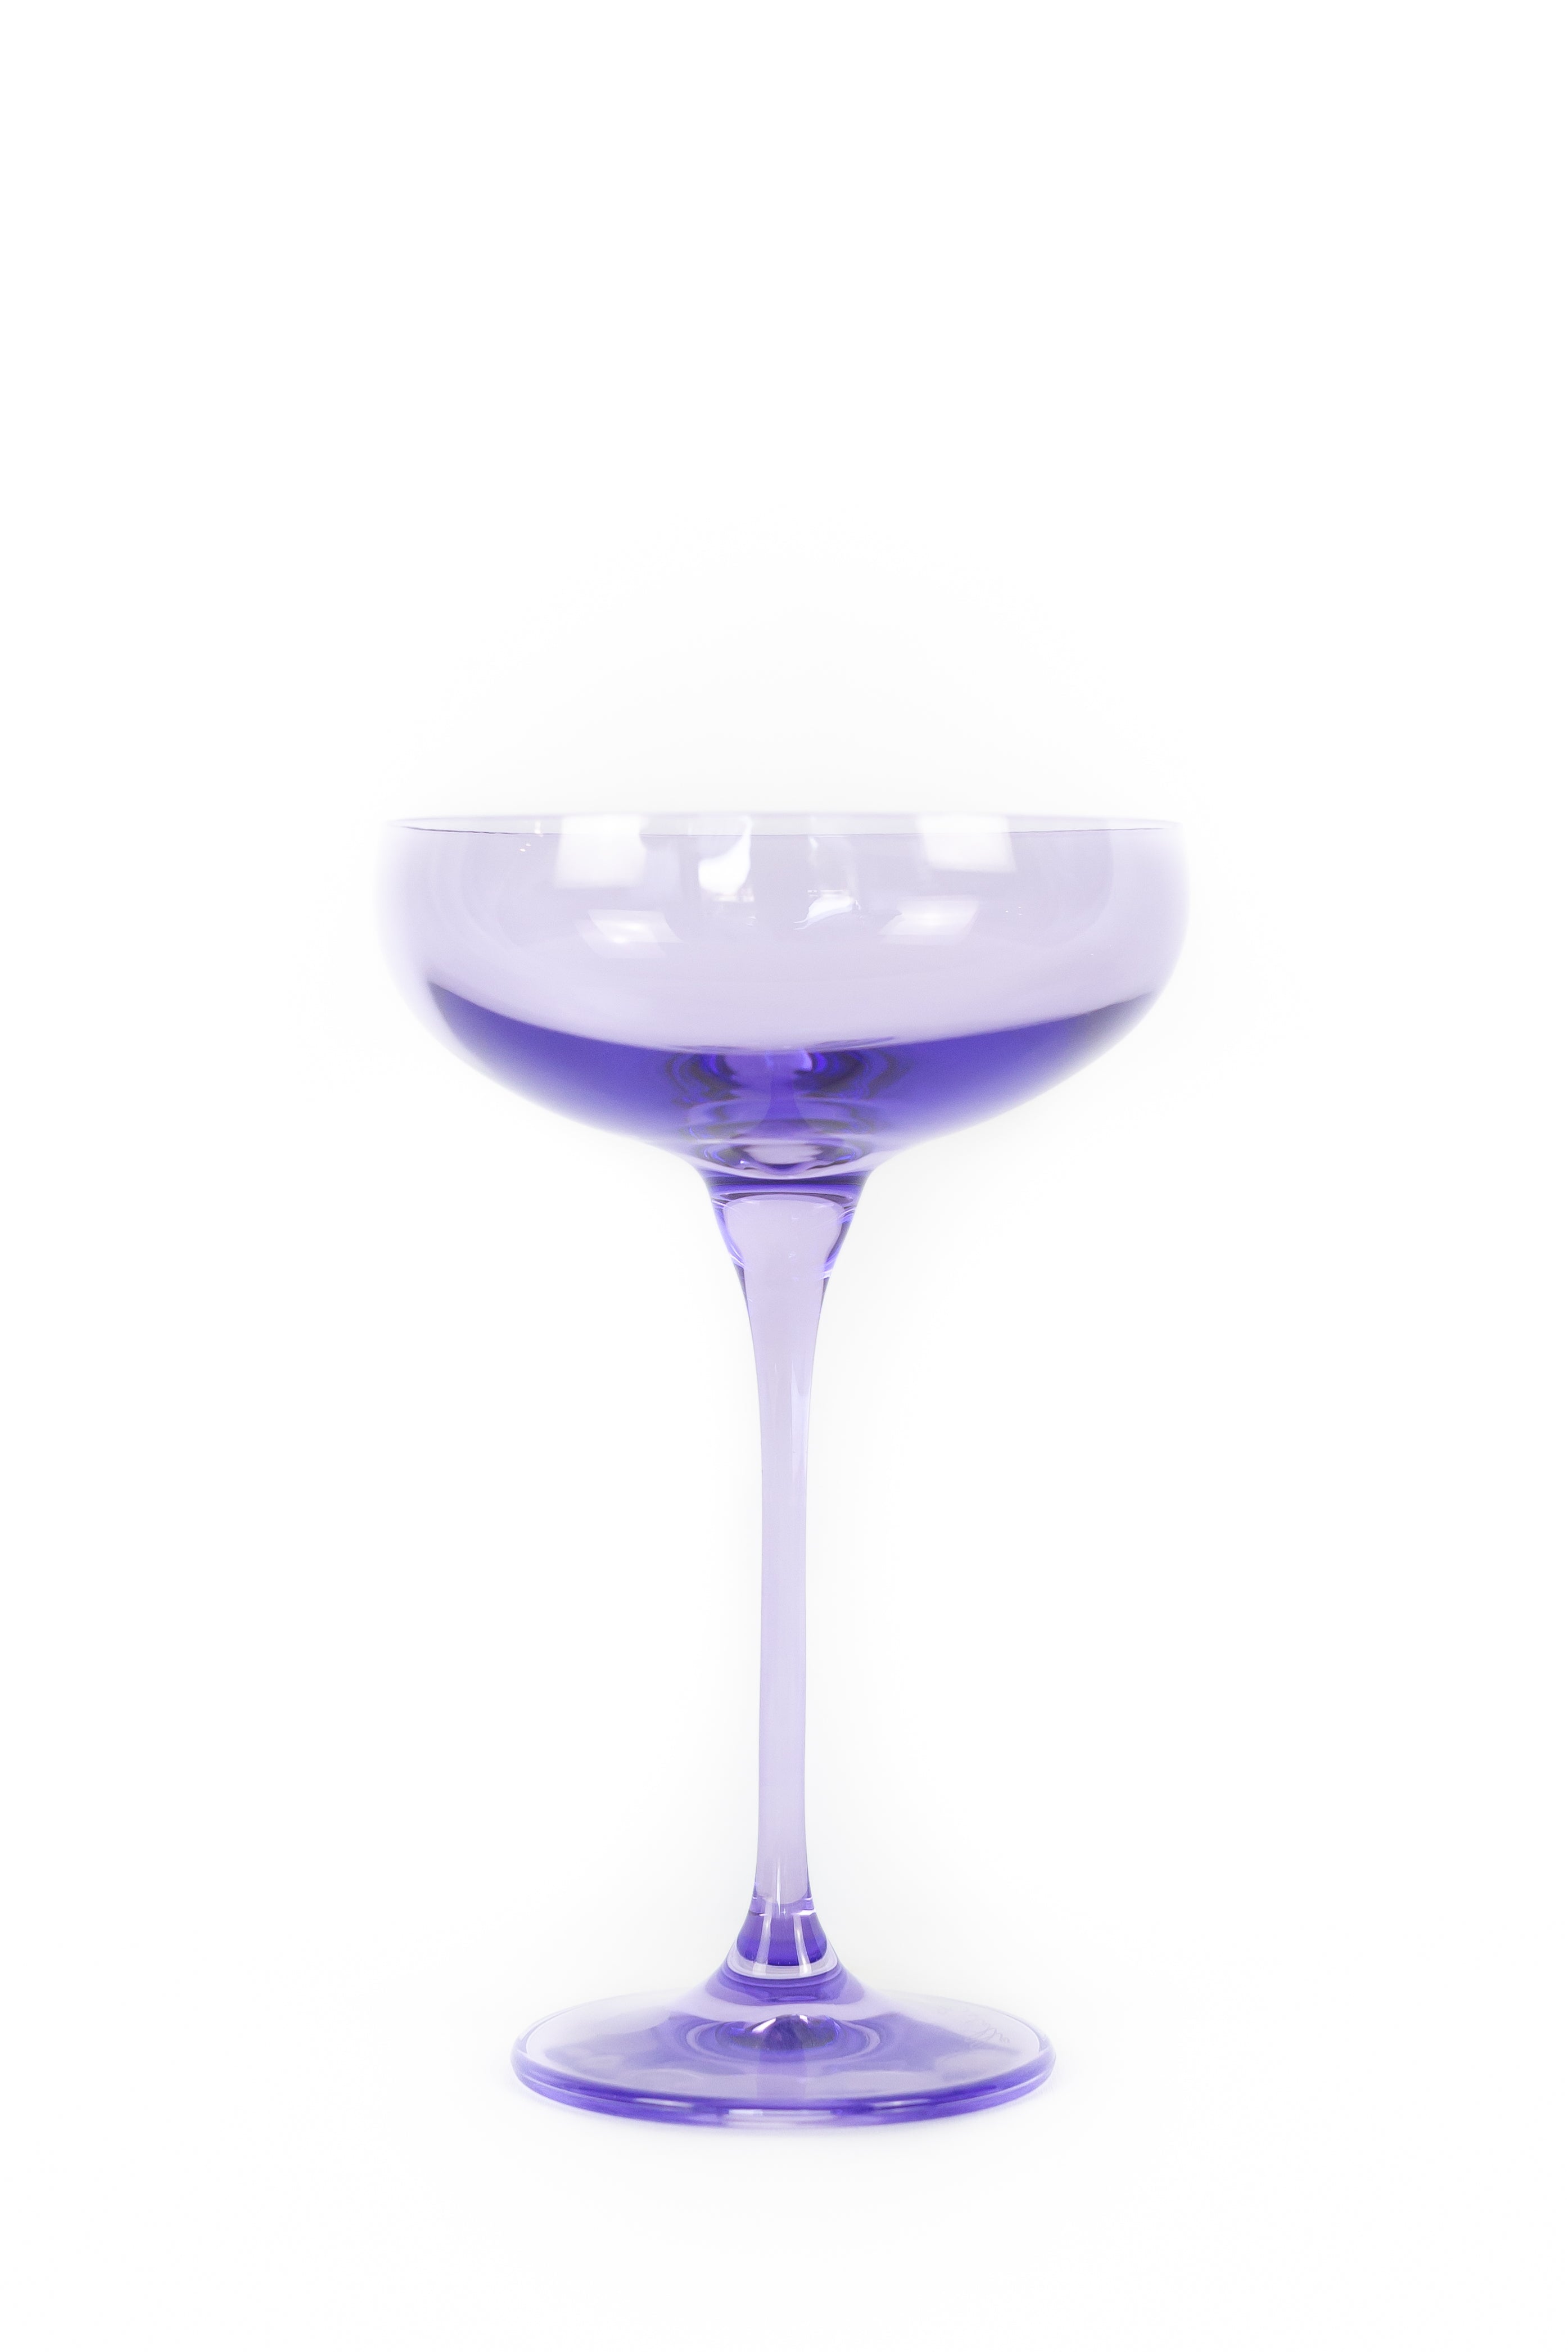 Estelle Colored Champagne Coupe Stemware - Set of 6 {Lavender}